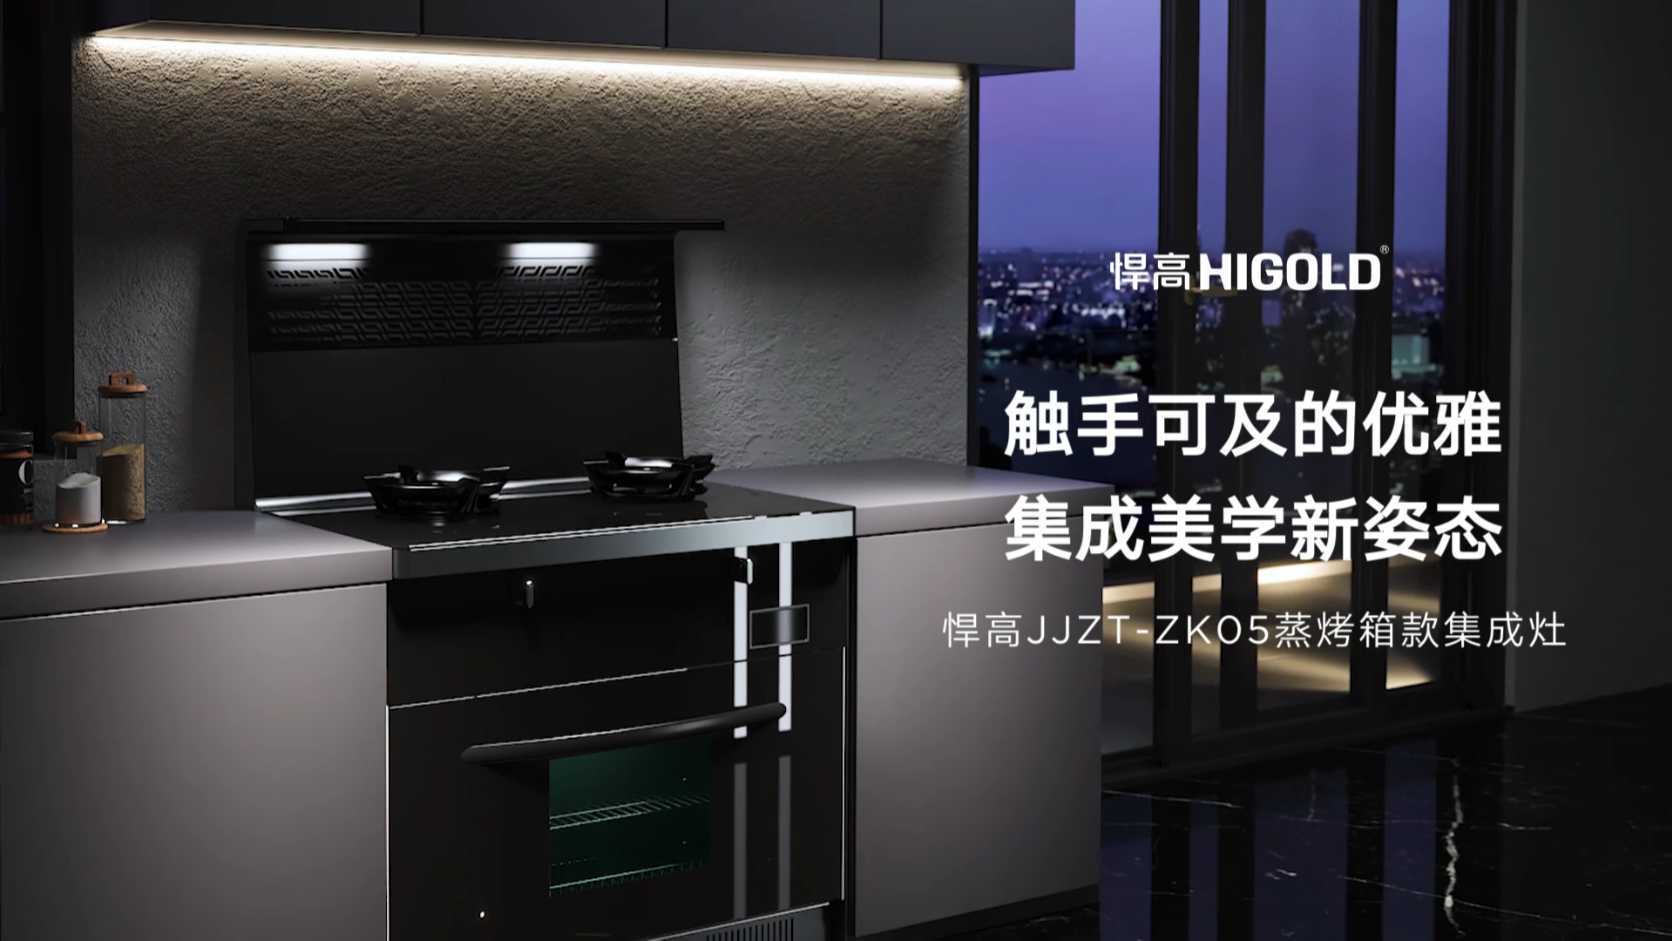 悍高JJZT-ZK05蒸烤箱款集成灶宣传视频